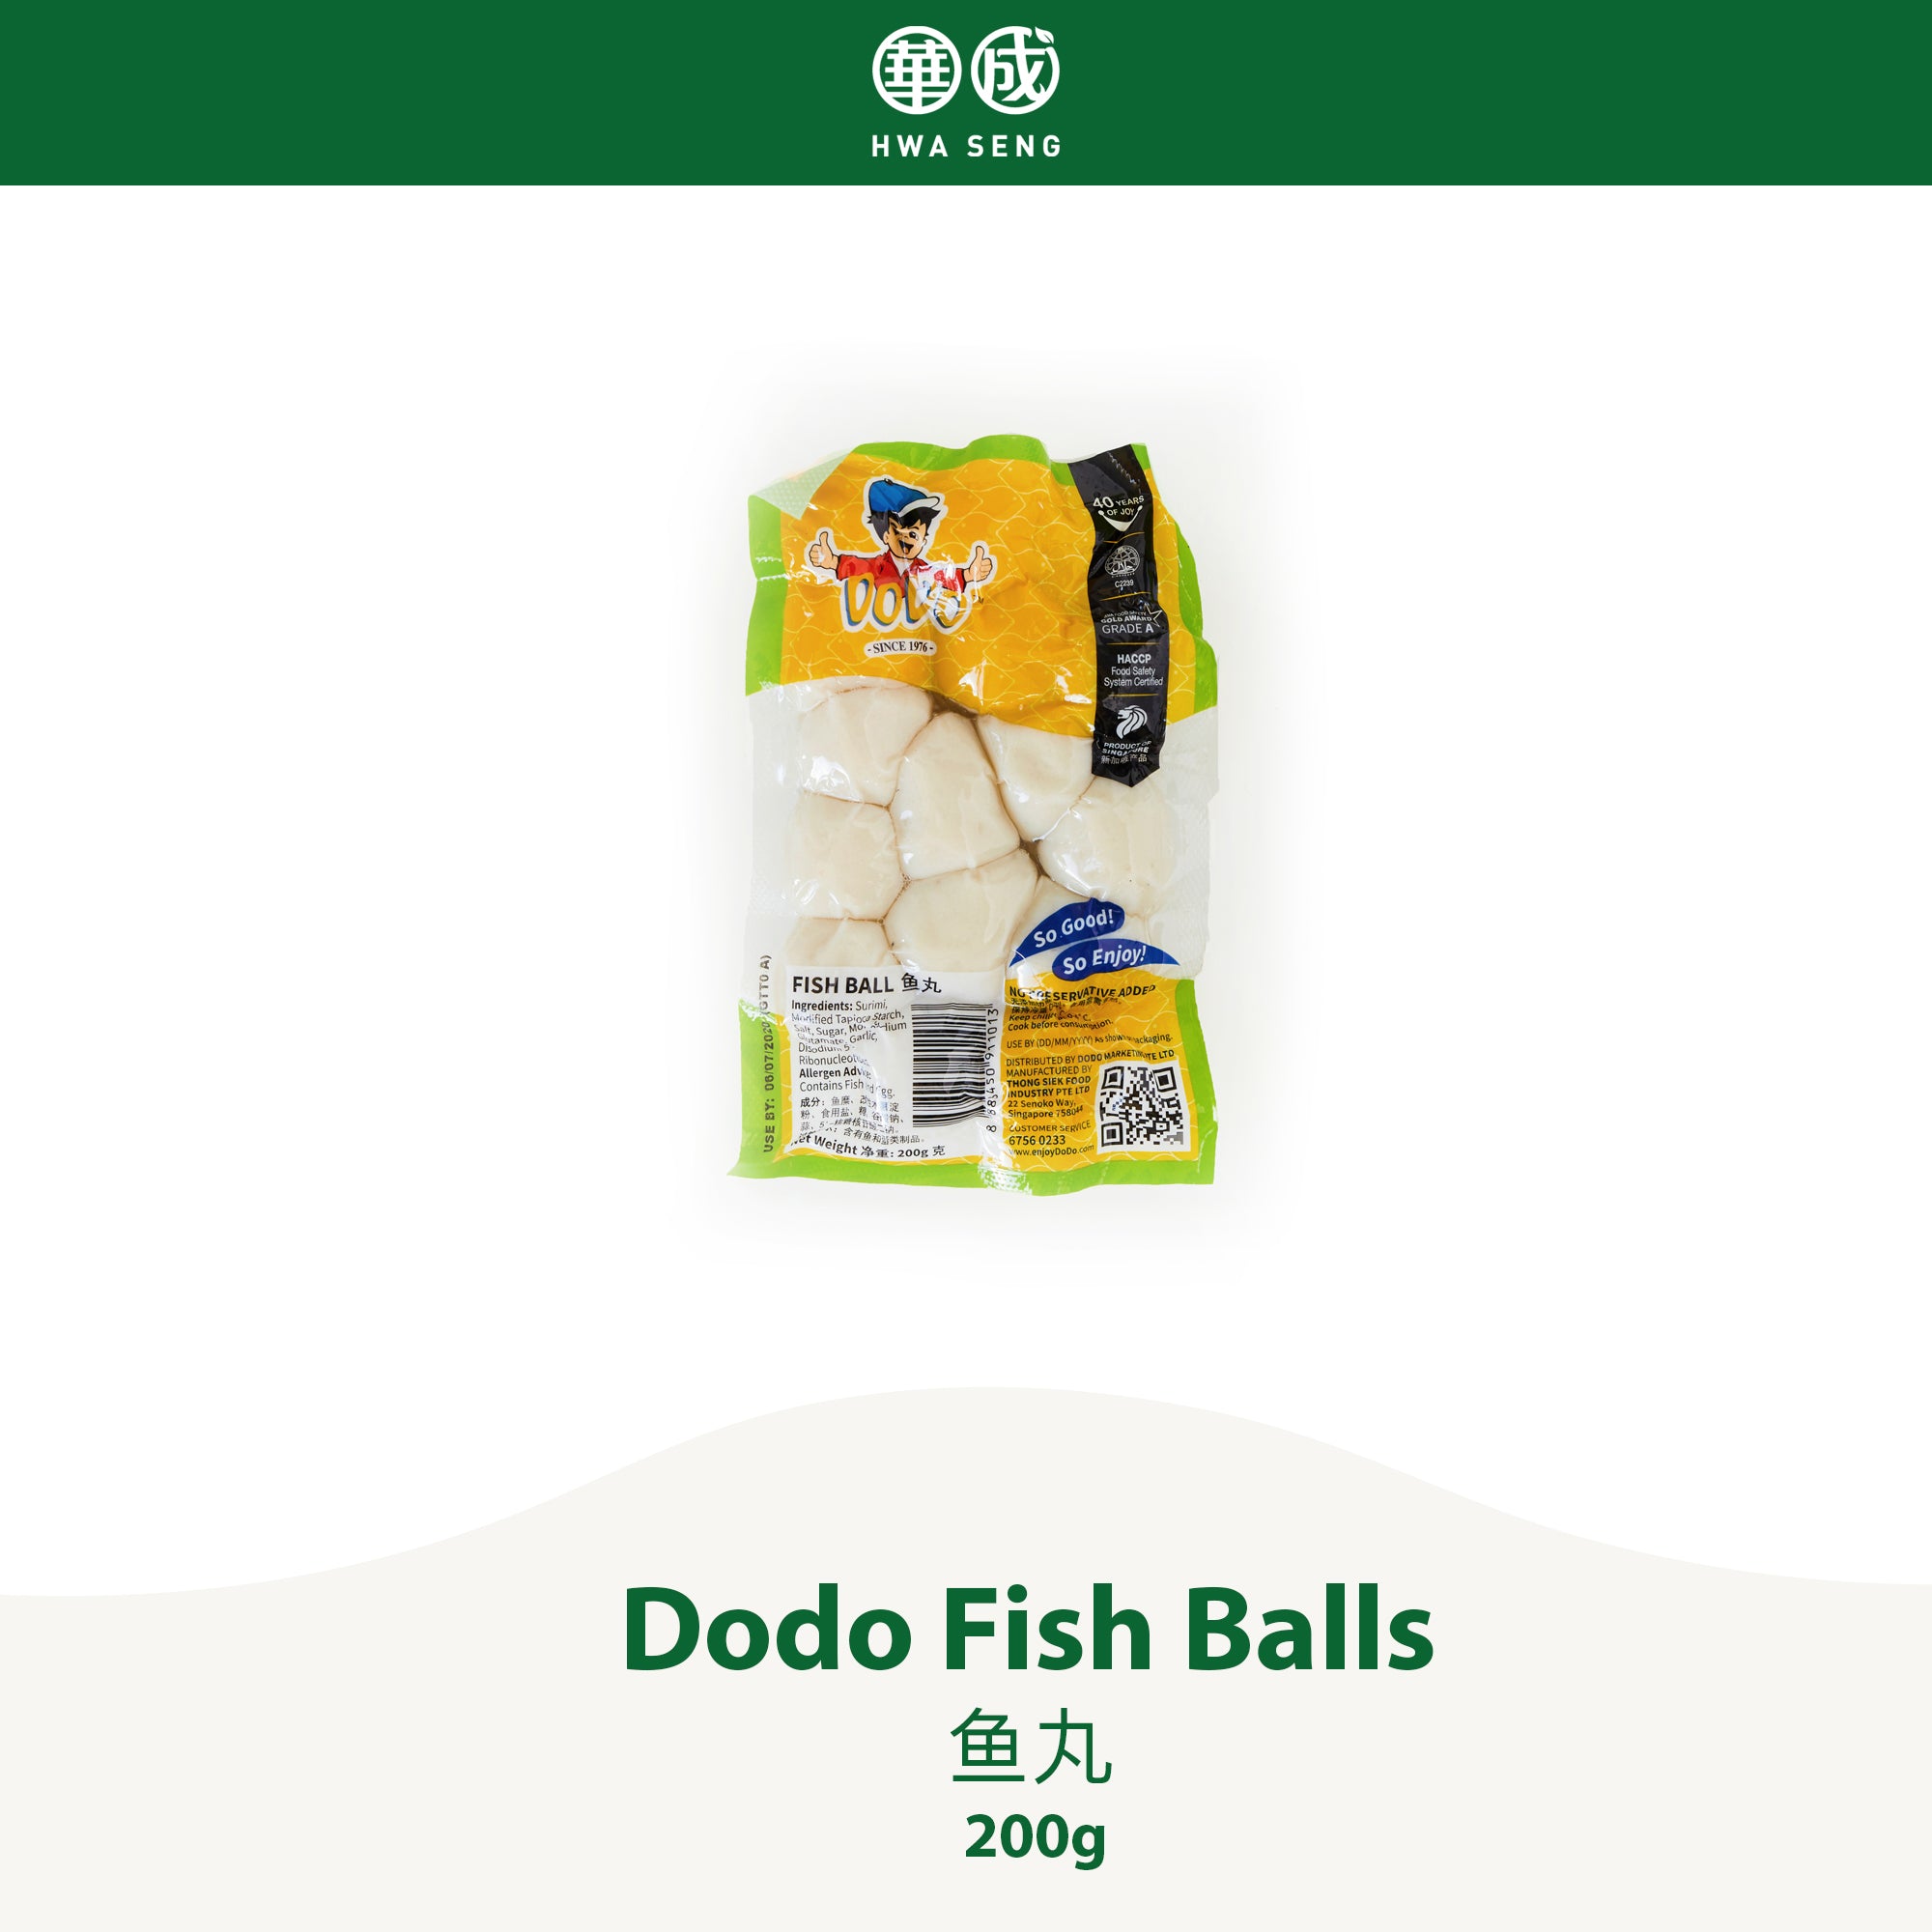 Dodo Fish Balls 鱼丸 200g per pkt